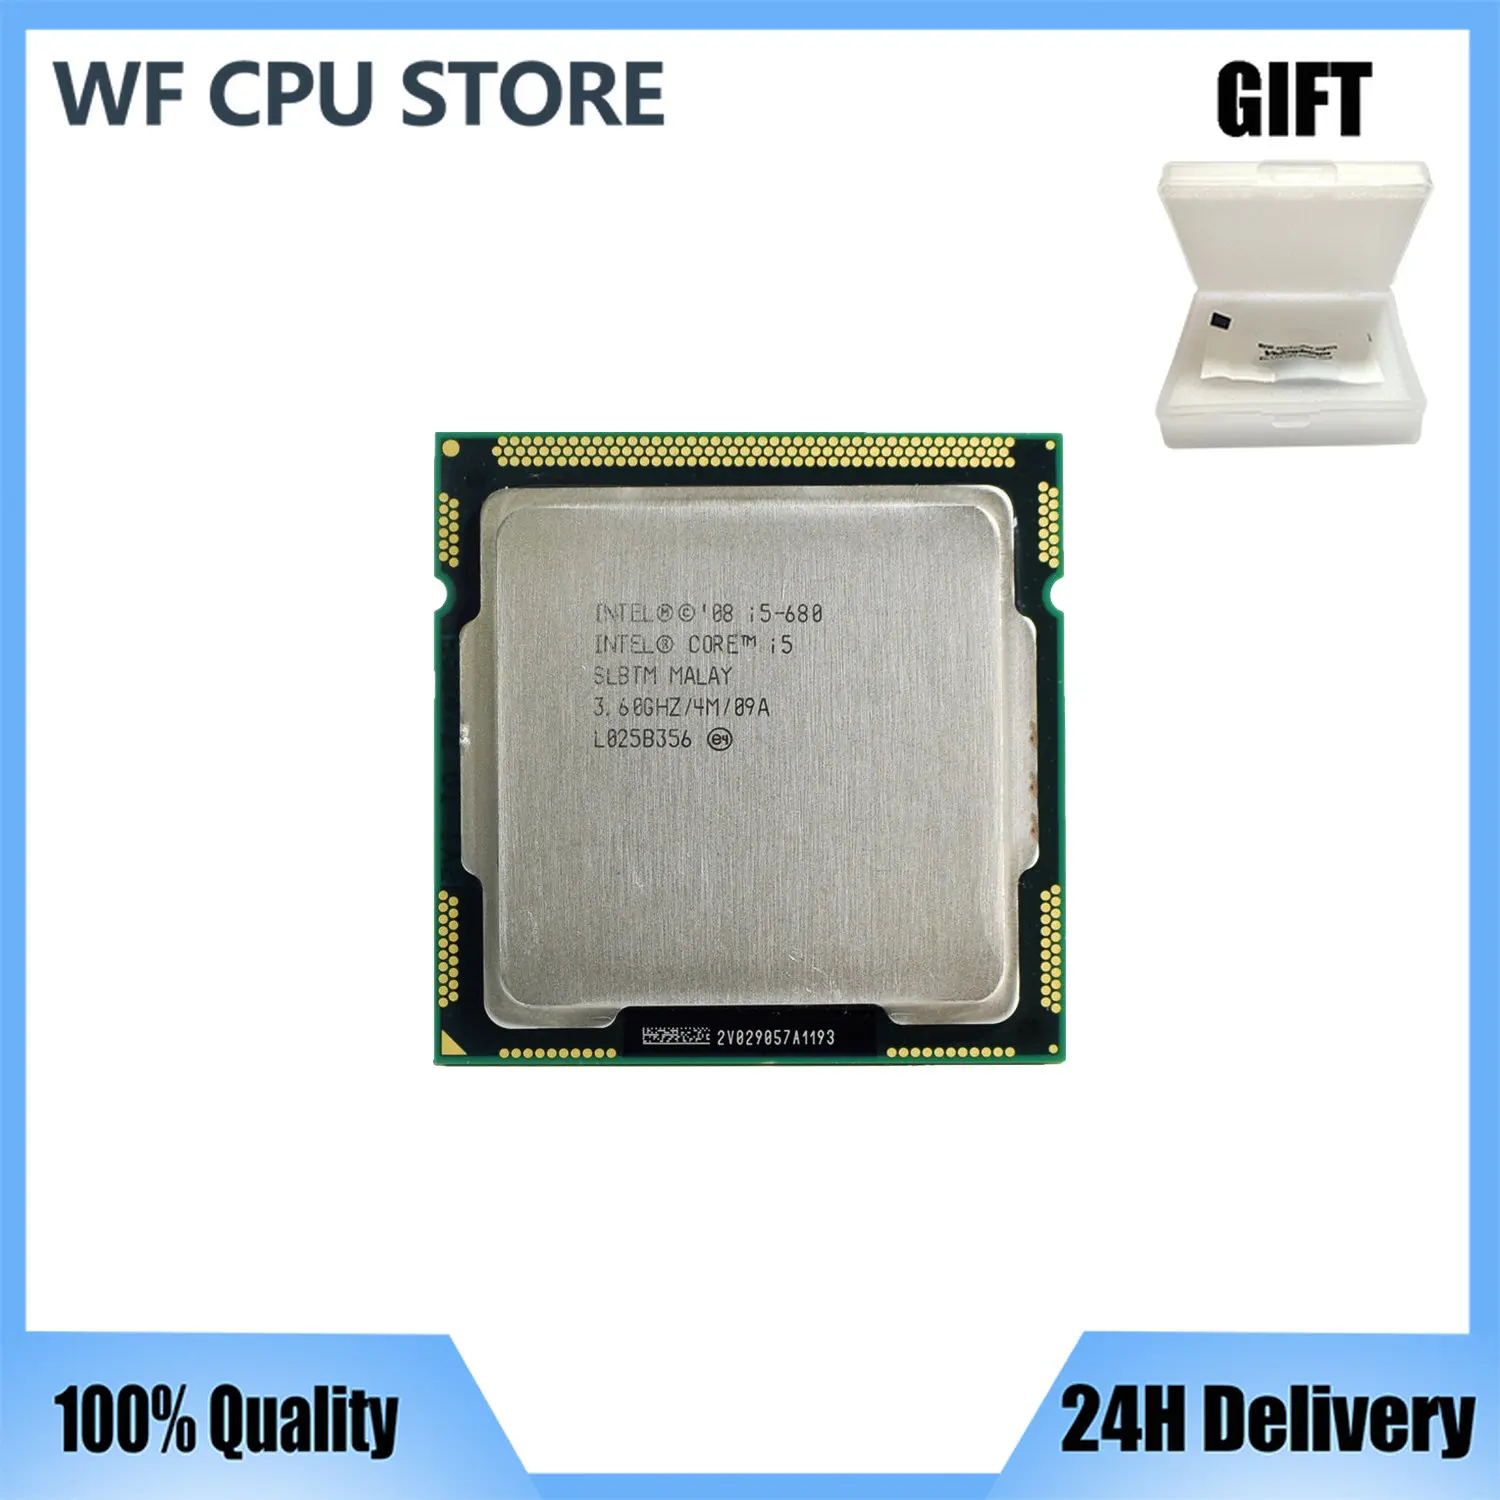 Intel Core i5-680 i5 680 3.6 GHz Dual-Core CPU Processor 4M 73W LGA 1156